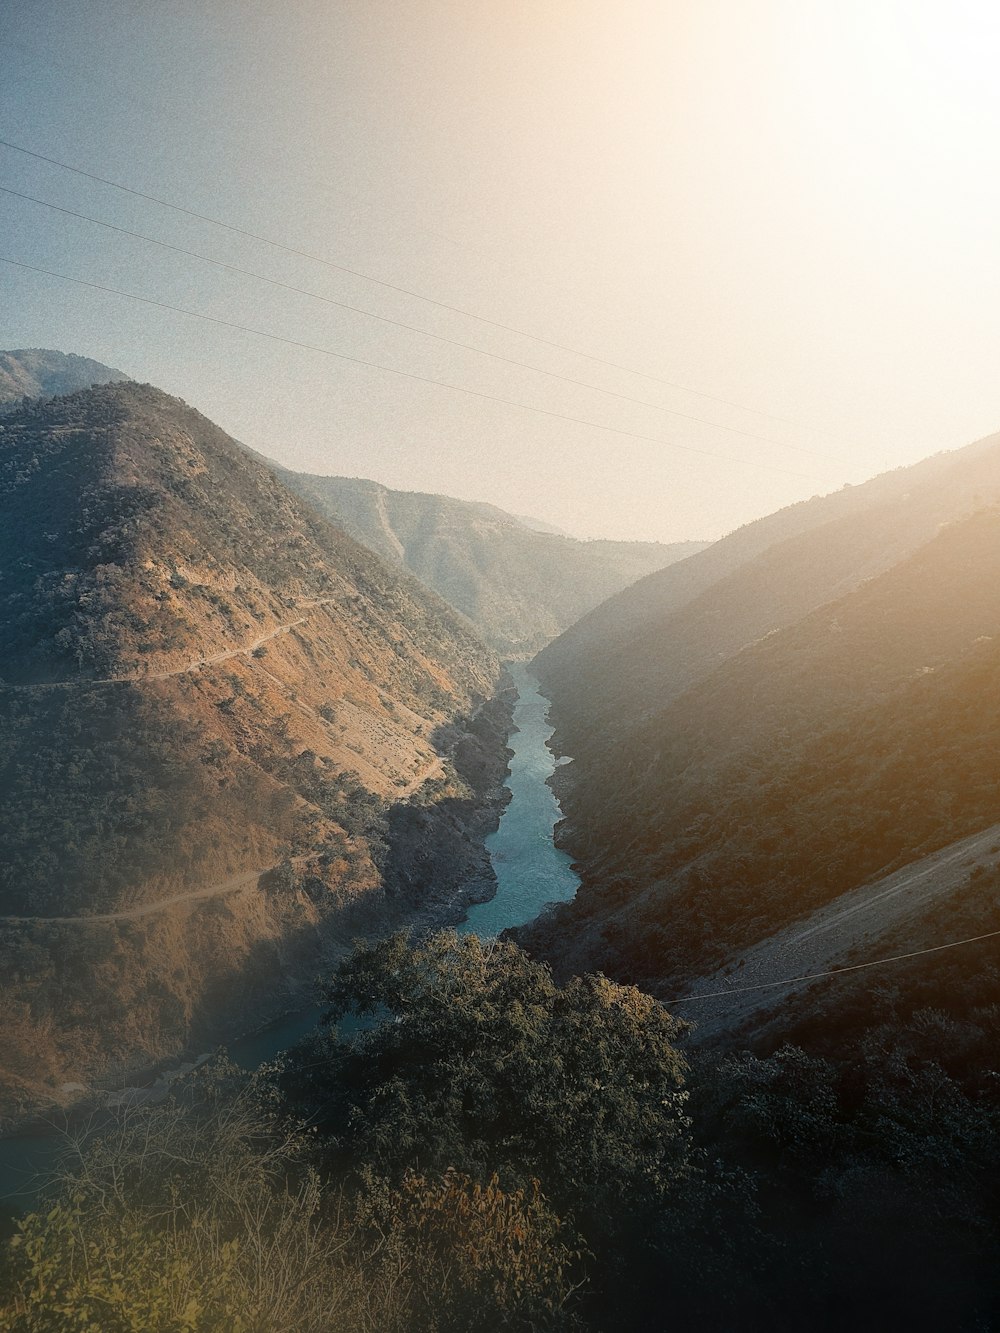 une rivière qui coule dans une vallée entourée de montagnes